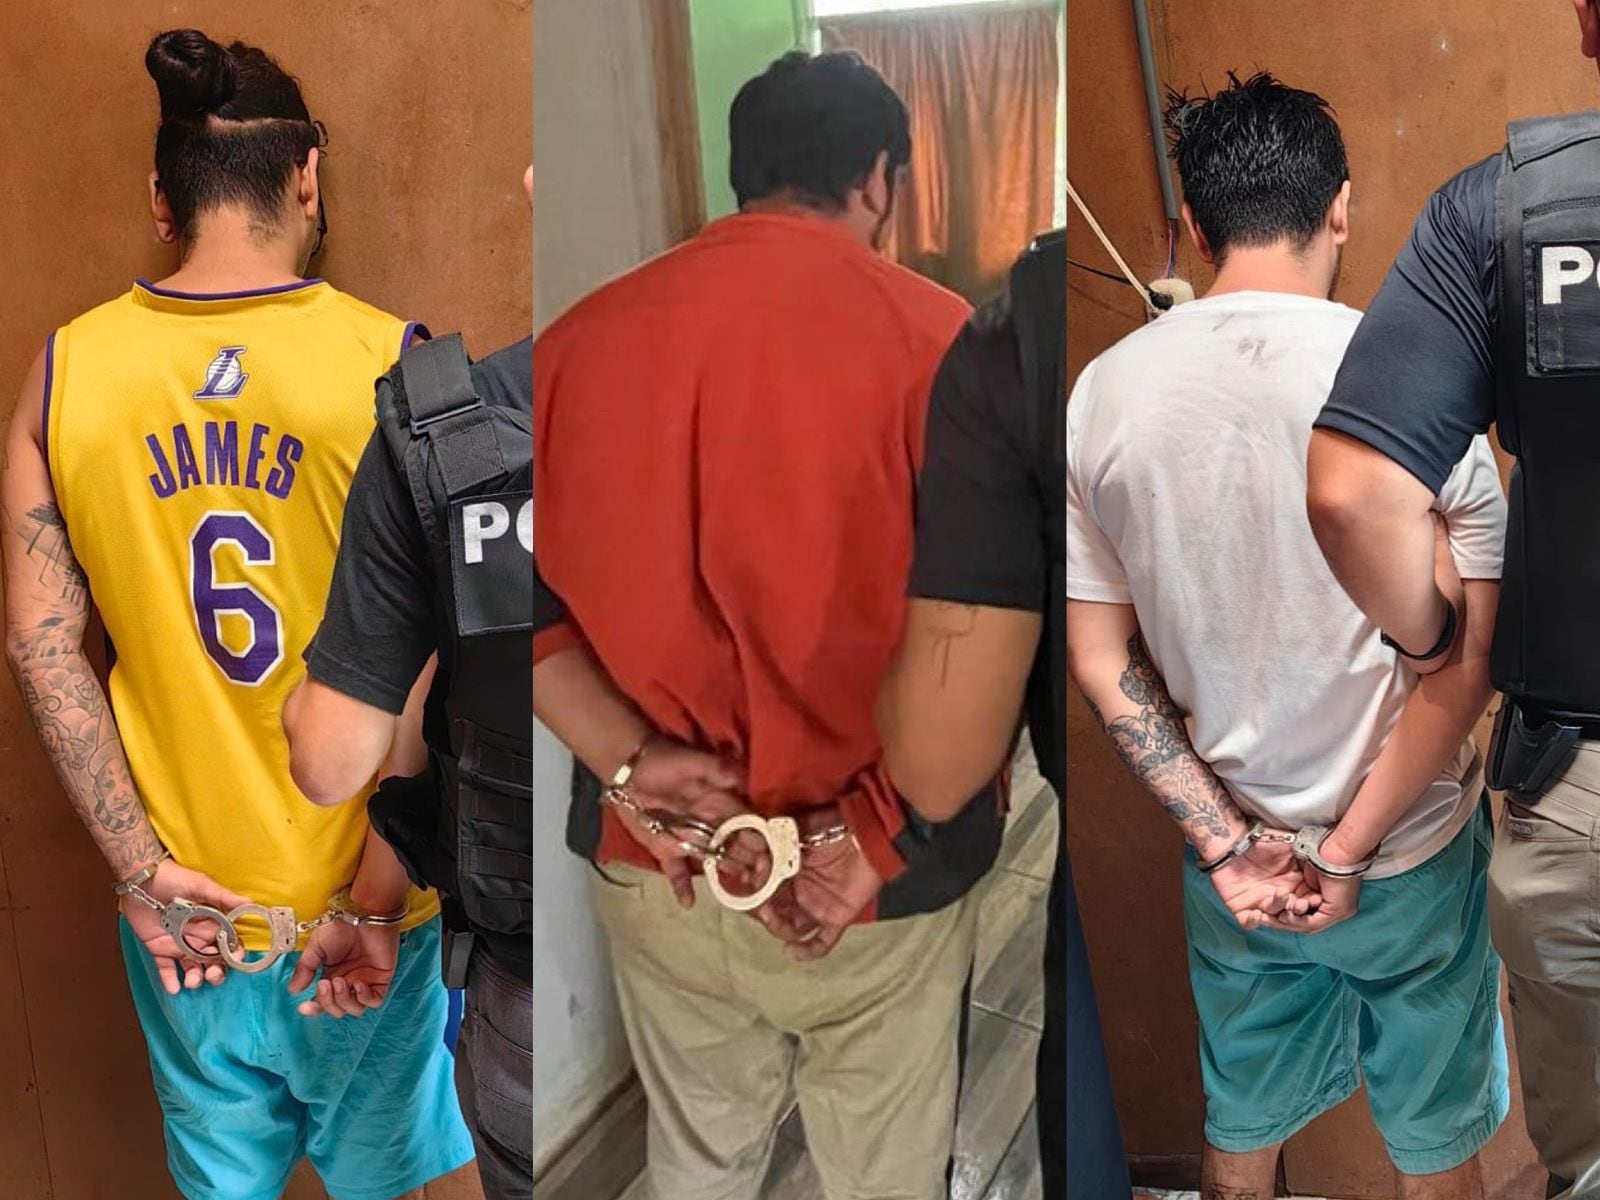 Un hombre de apellido Solano fue detenido por venta de drogas. Él y otros dos más, apellidados Mora, también enfrentan un proceso por aparentes amenazas en Puriscal.